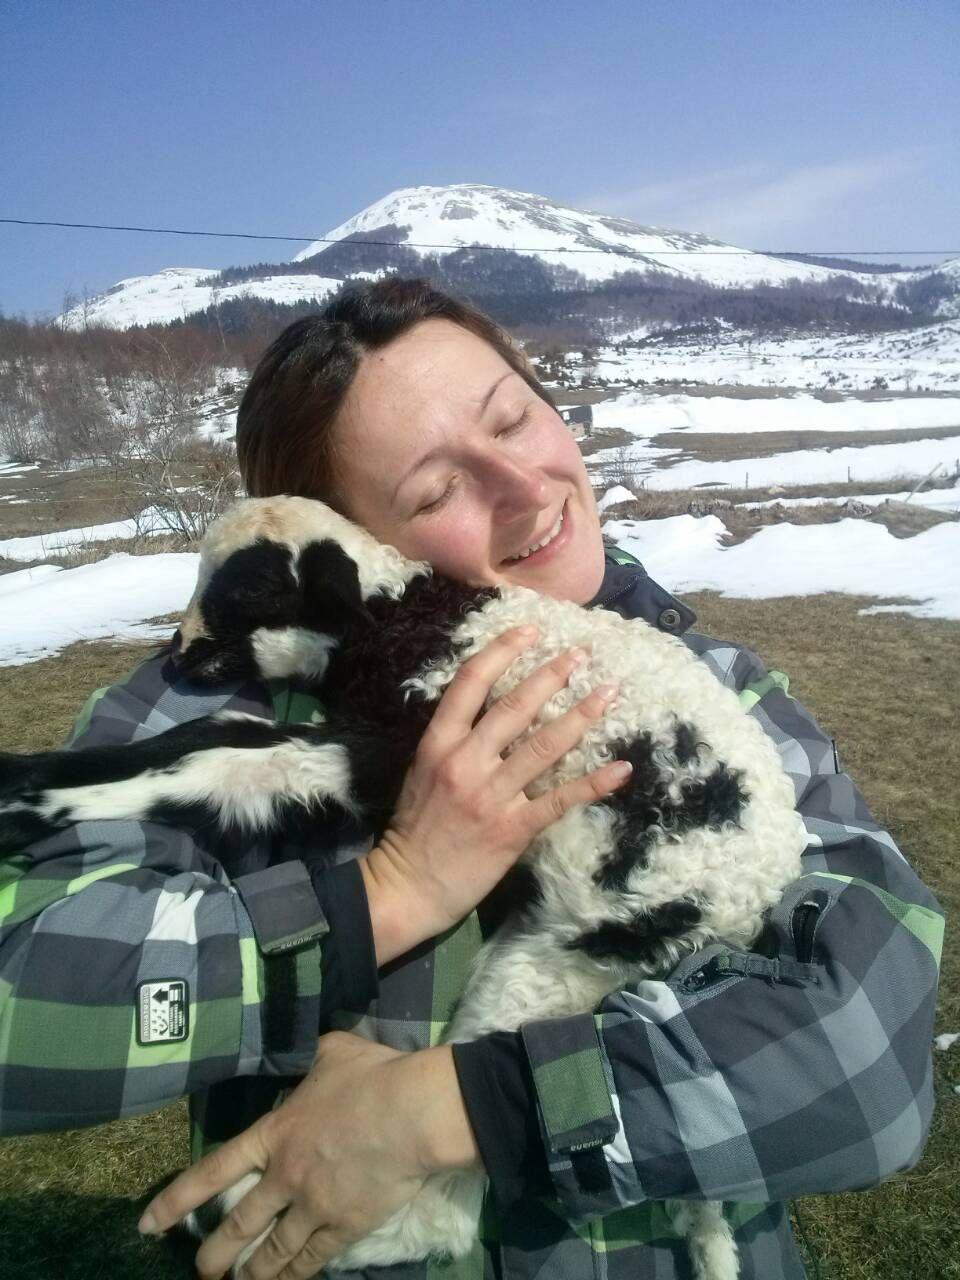 Duvnjak: Životinje su joj jedini prijatelji na planini - Avaz